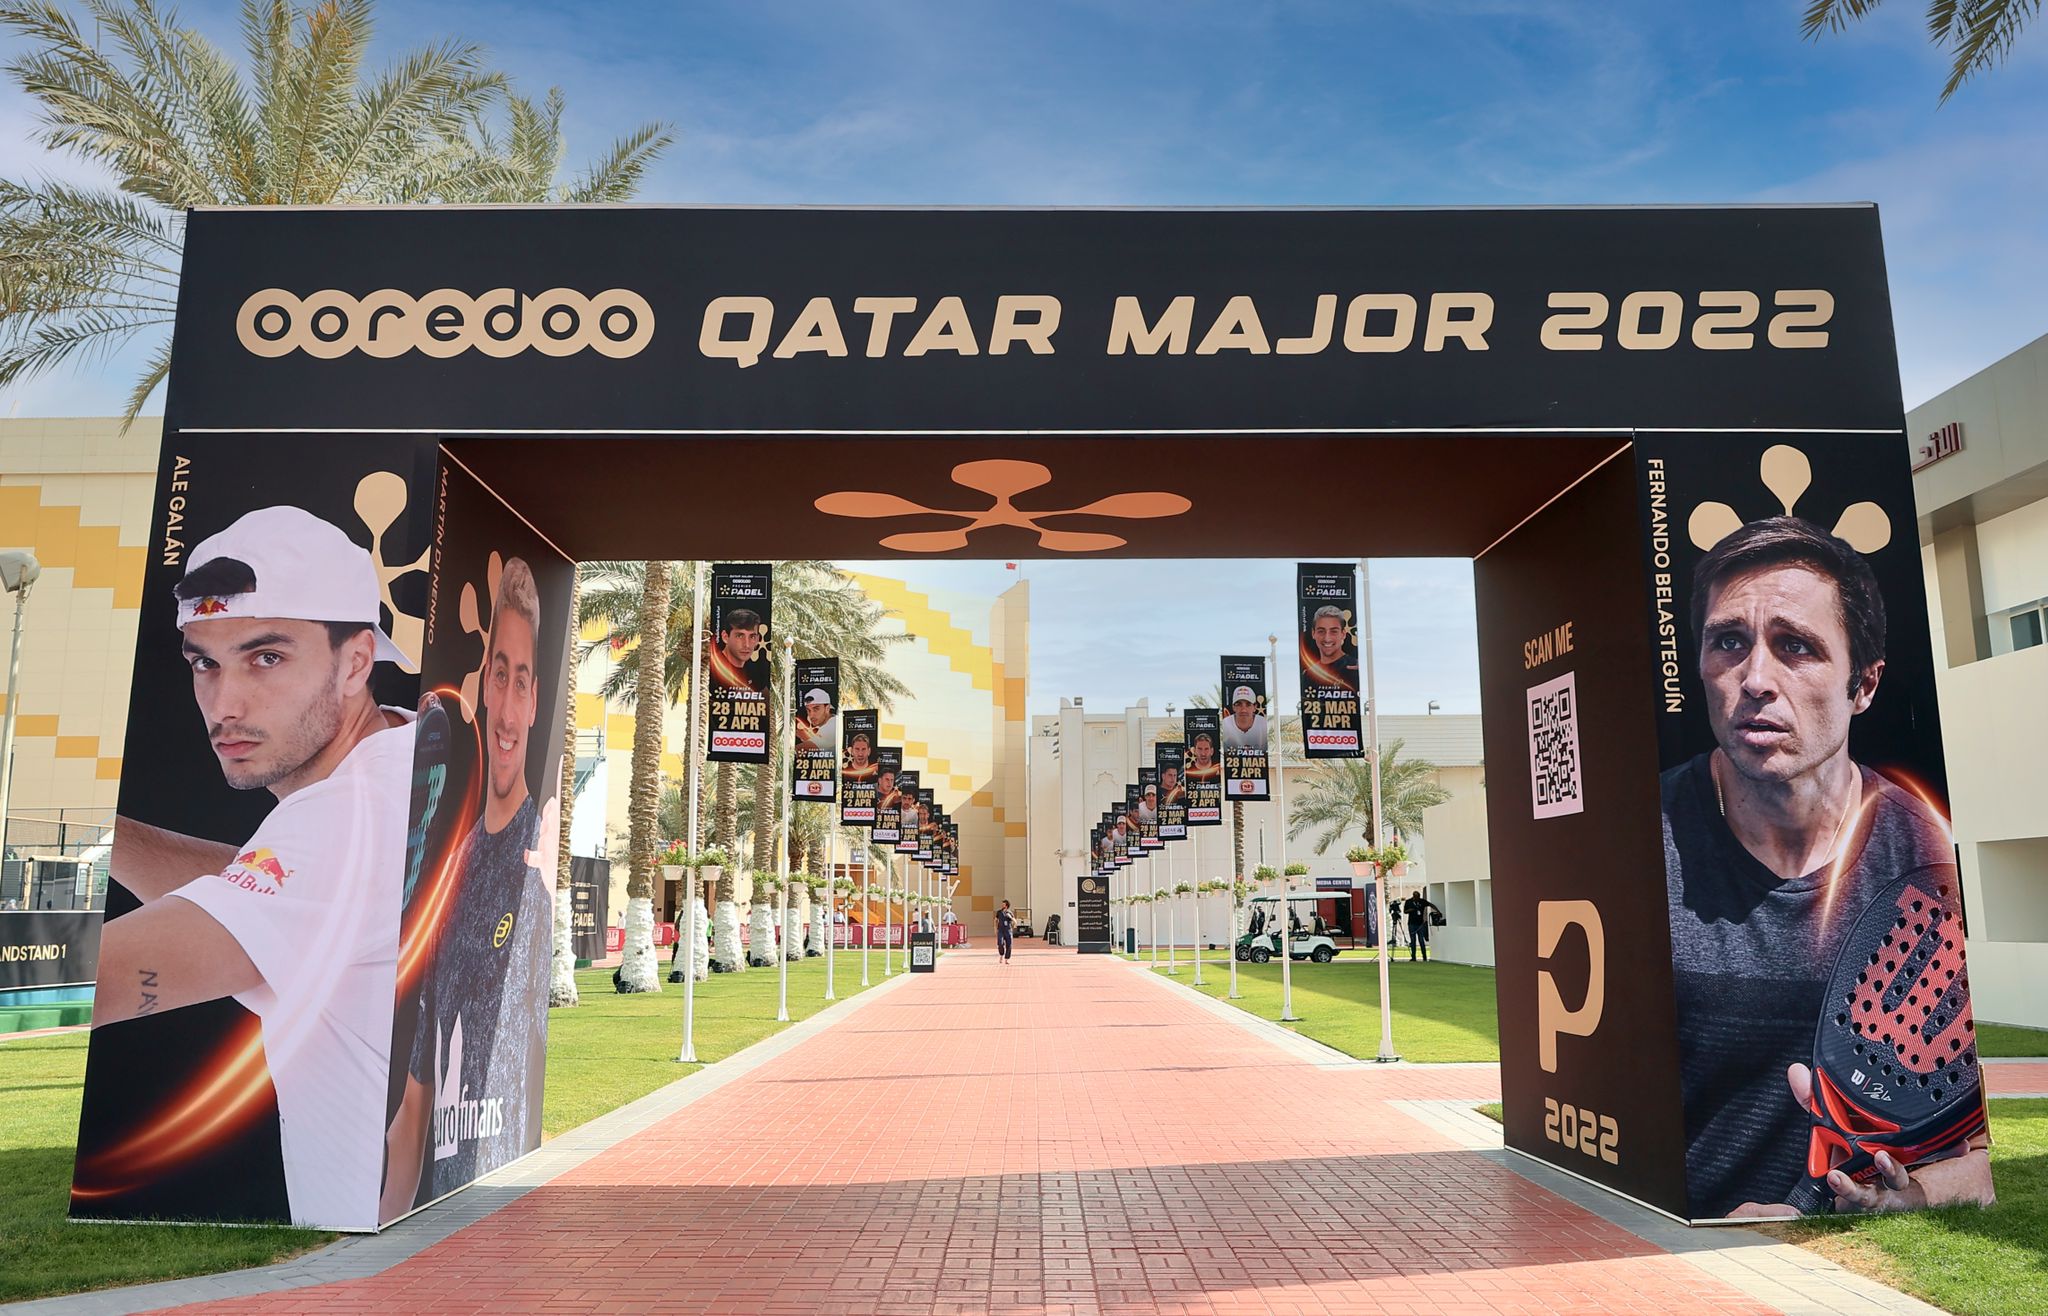 Eintrag Khalifa Doha Qatar Major 2022